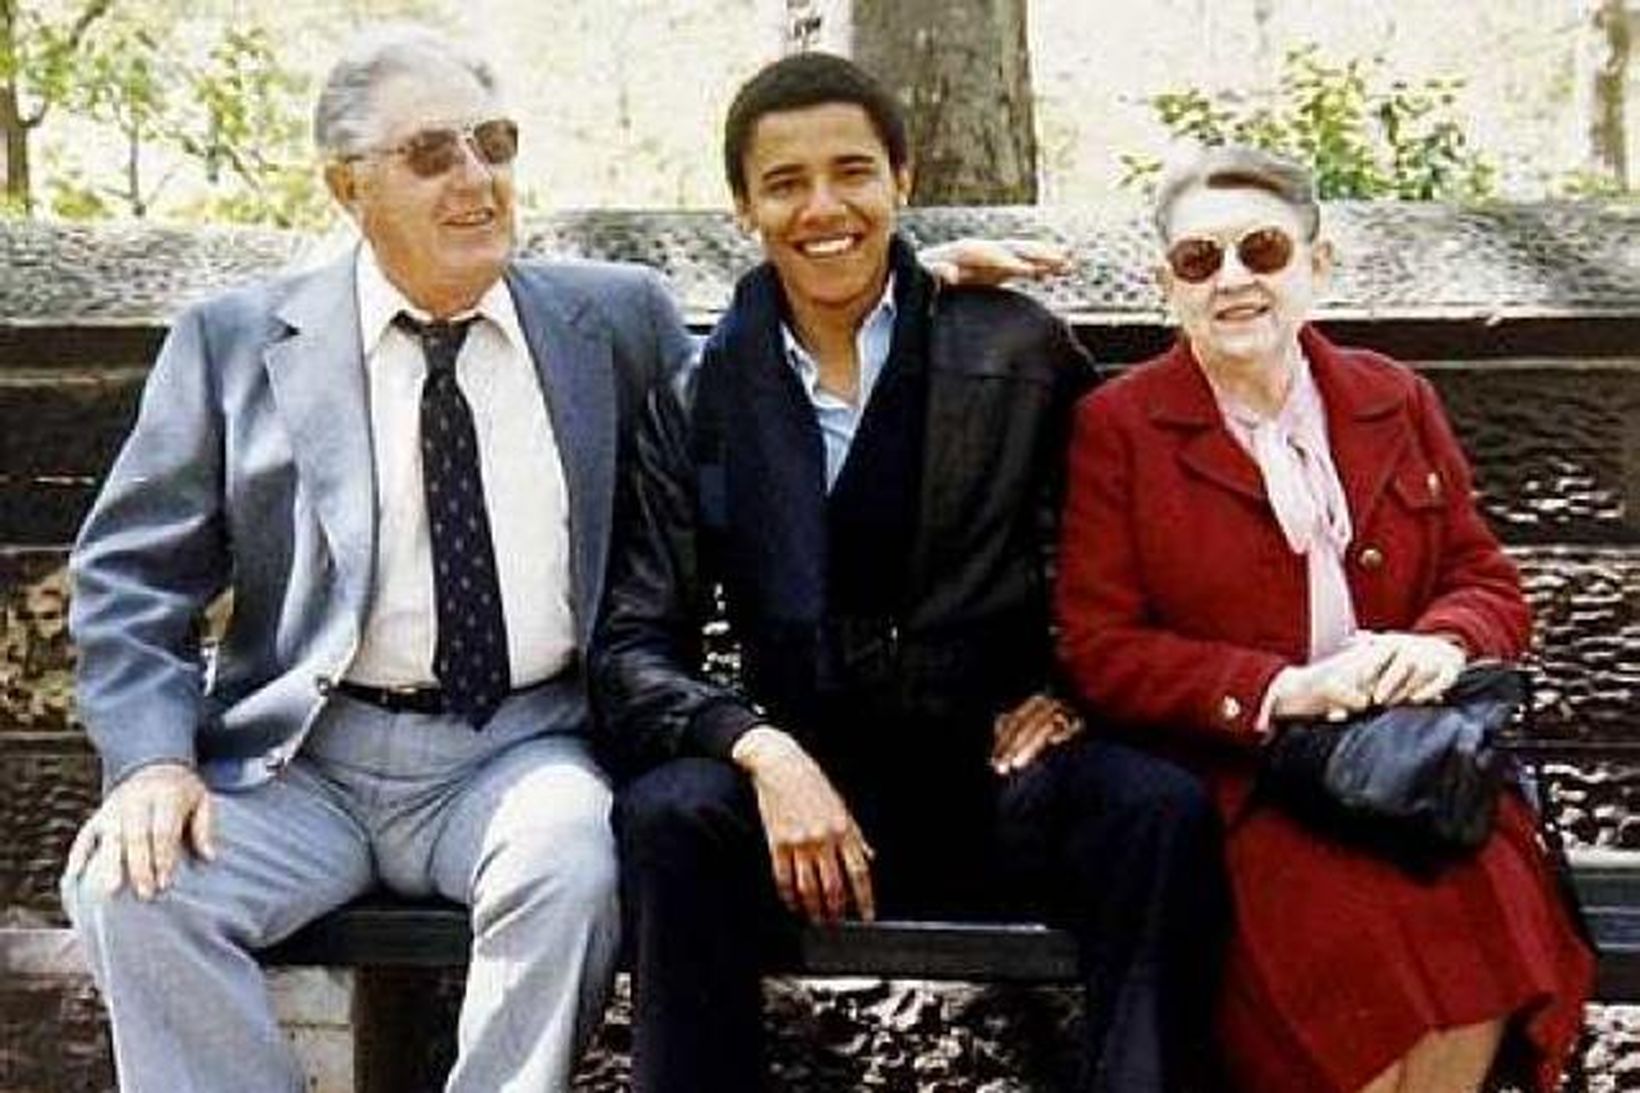 Barack Obama ásamt afa sínum og ömmu: Stanley og Madelyn …